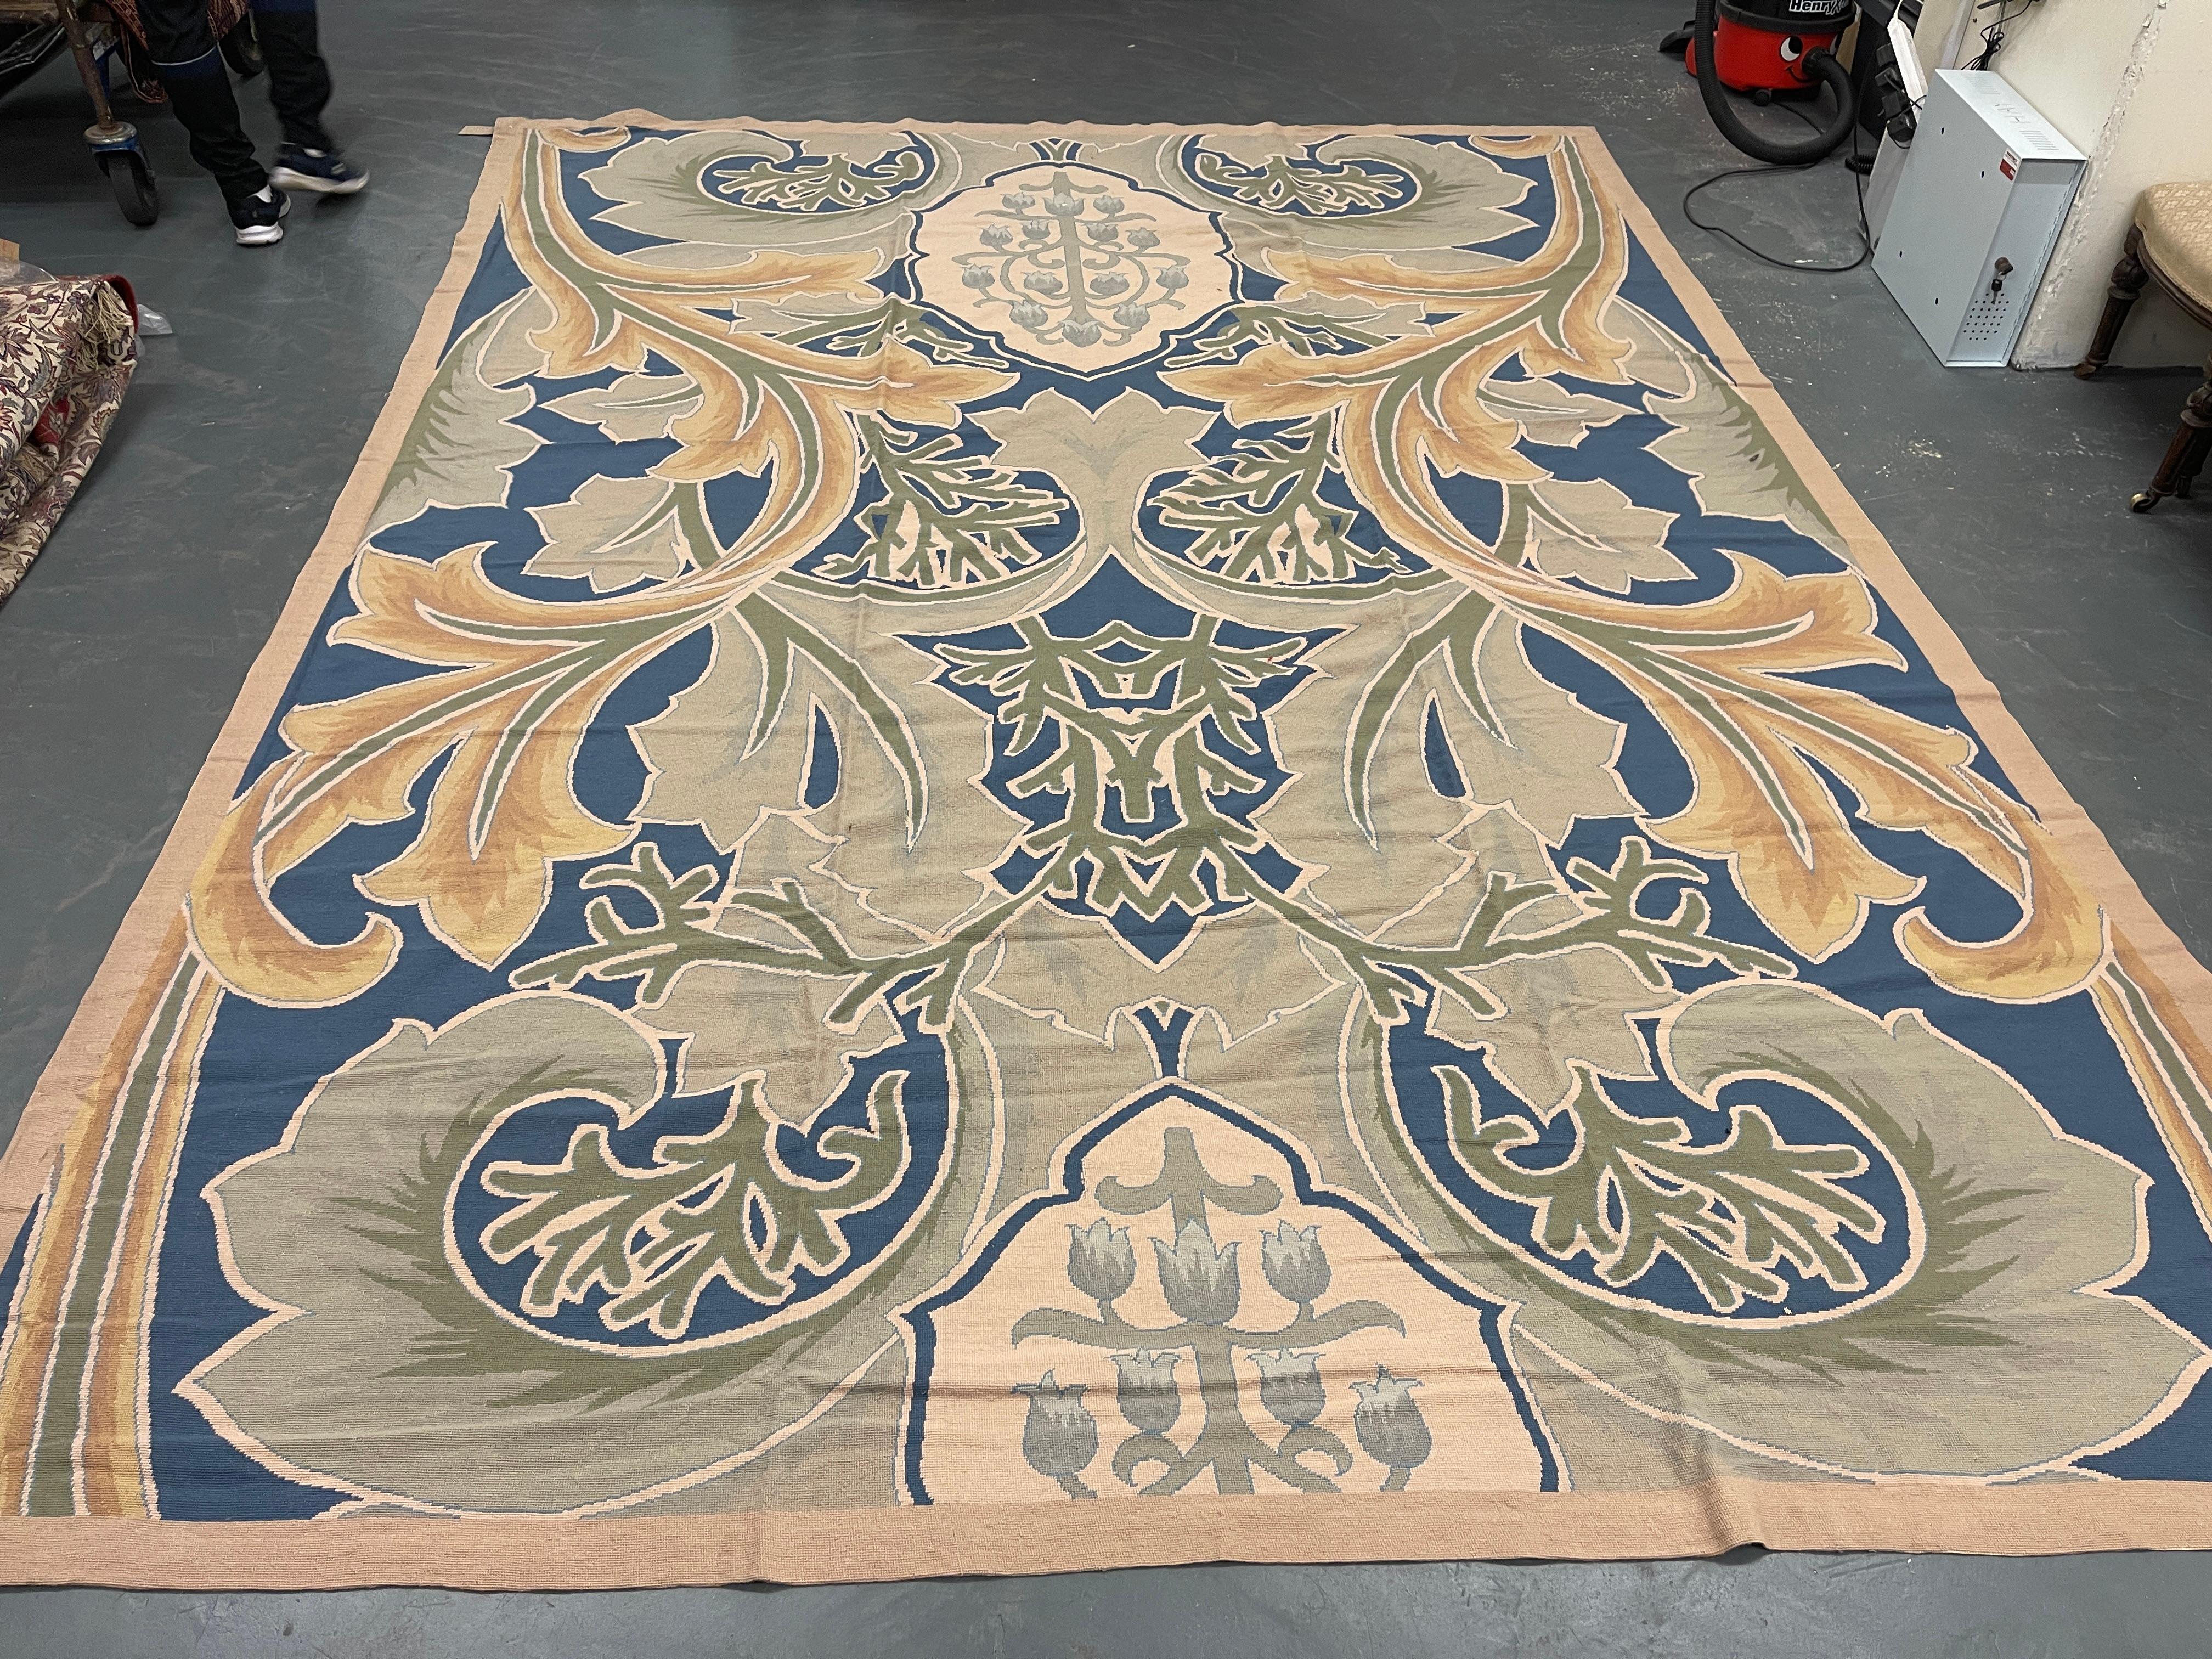 Ce magnifique tapis a été tissé à la main avec un magnifique motif botanique symétrique à grande échelle sur un fond bleu/vert ivoire avec des accents de vert crème et d'ivoire. La couleur et le design de cette pièce élégante en font le tapis